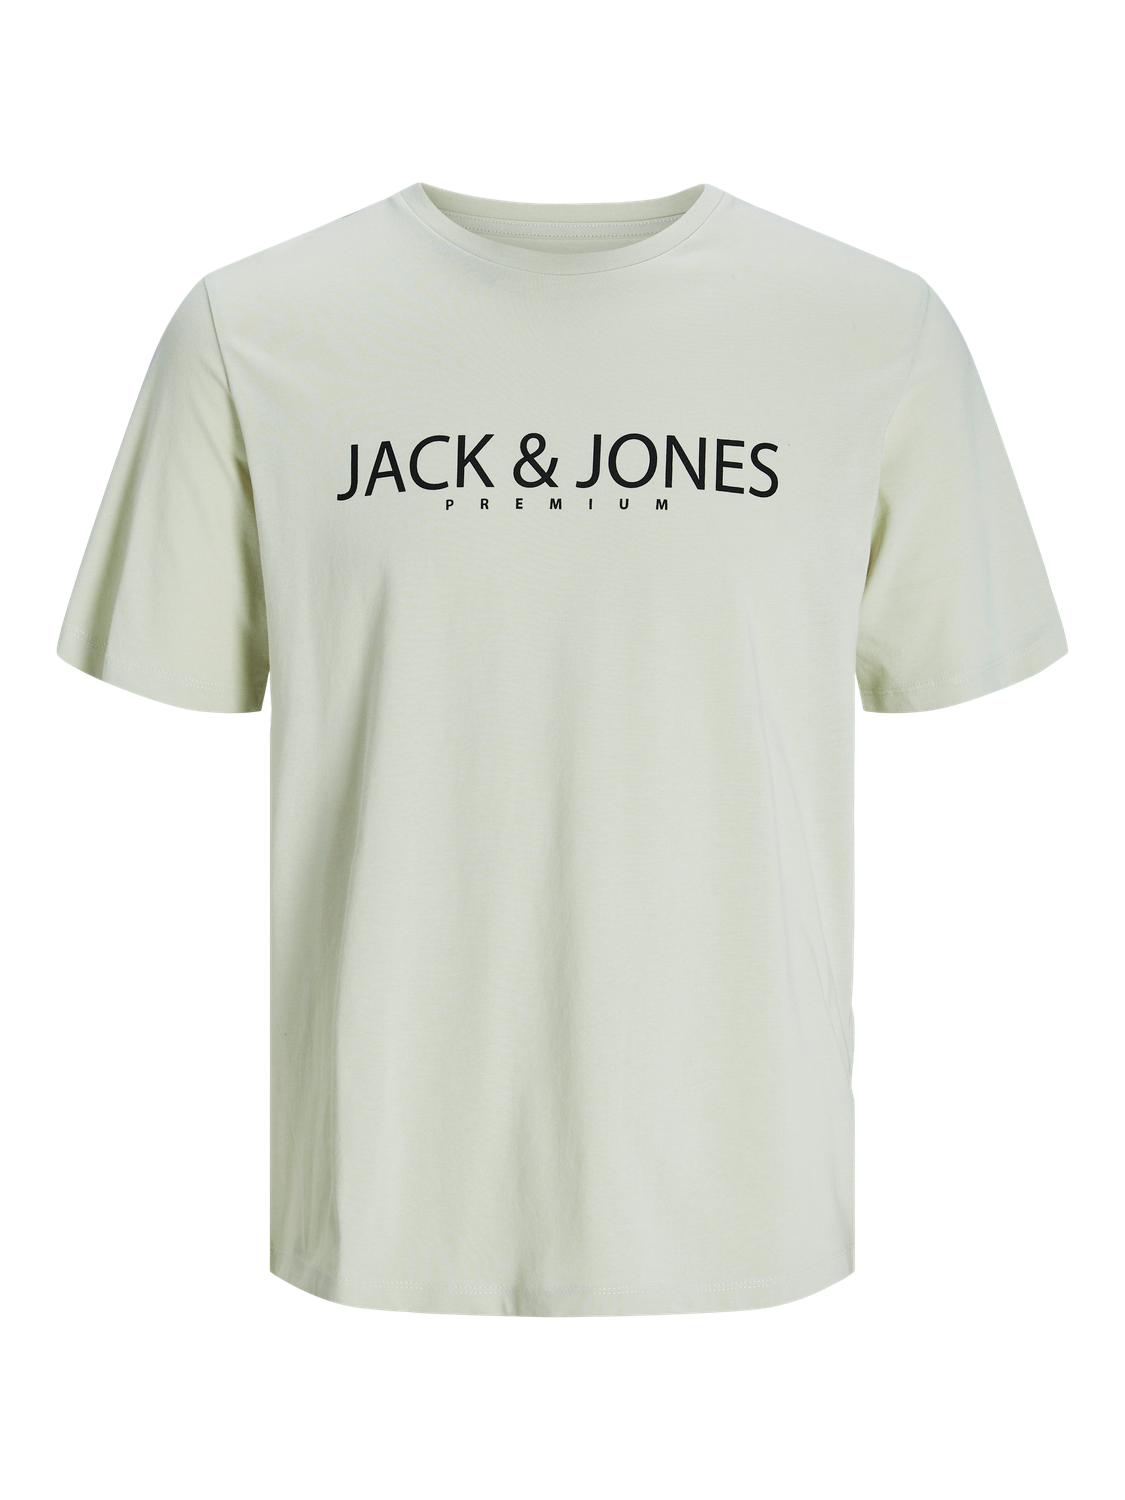 Jack & Jones Nyomott mintás Környak Trikó -Green Tint - 12256971